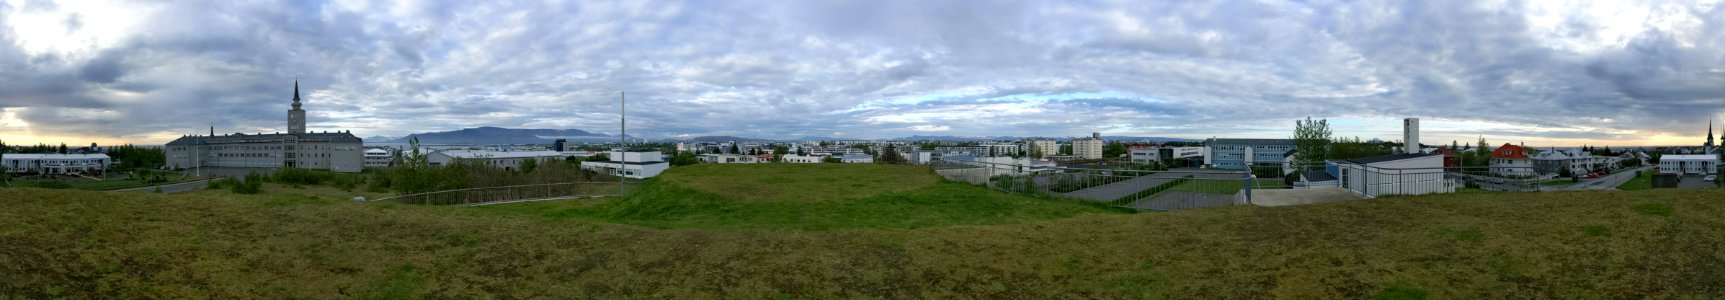 Reykjavik 10 photo